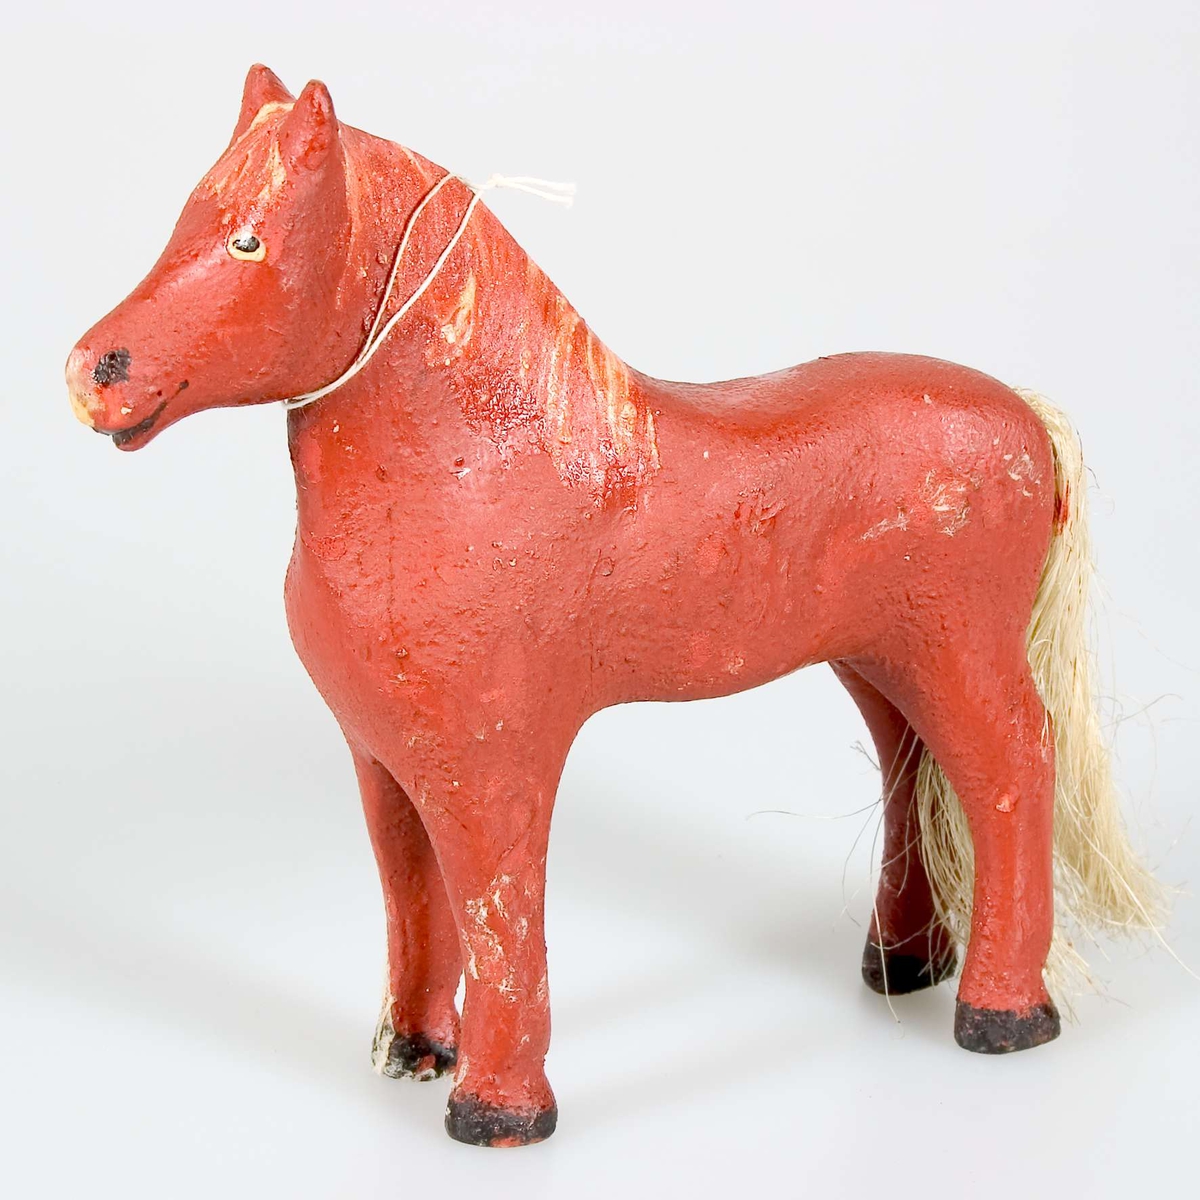 Leksaksdjuret föreställer en häst